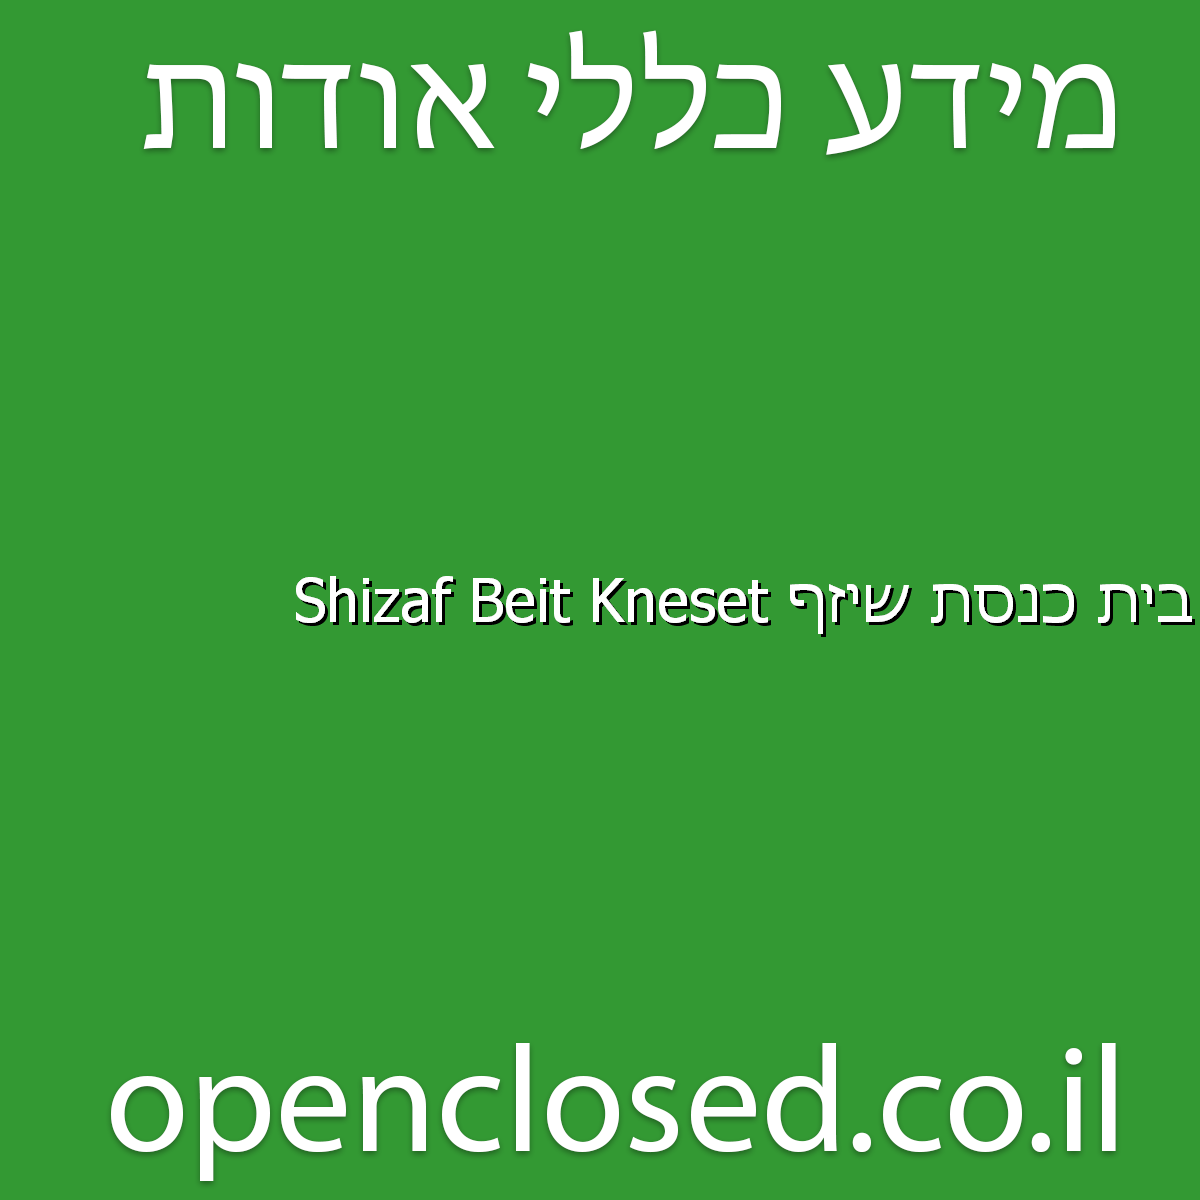 בית כנסת שיזף Shizaf Beit Kneset